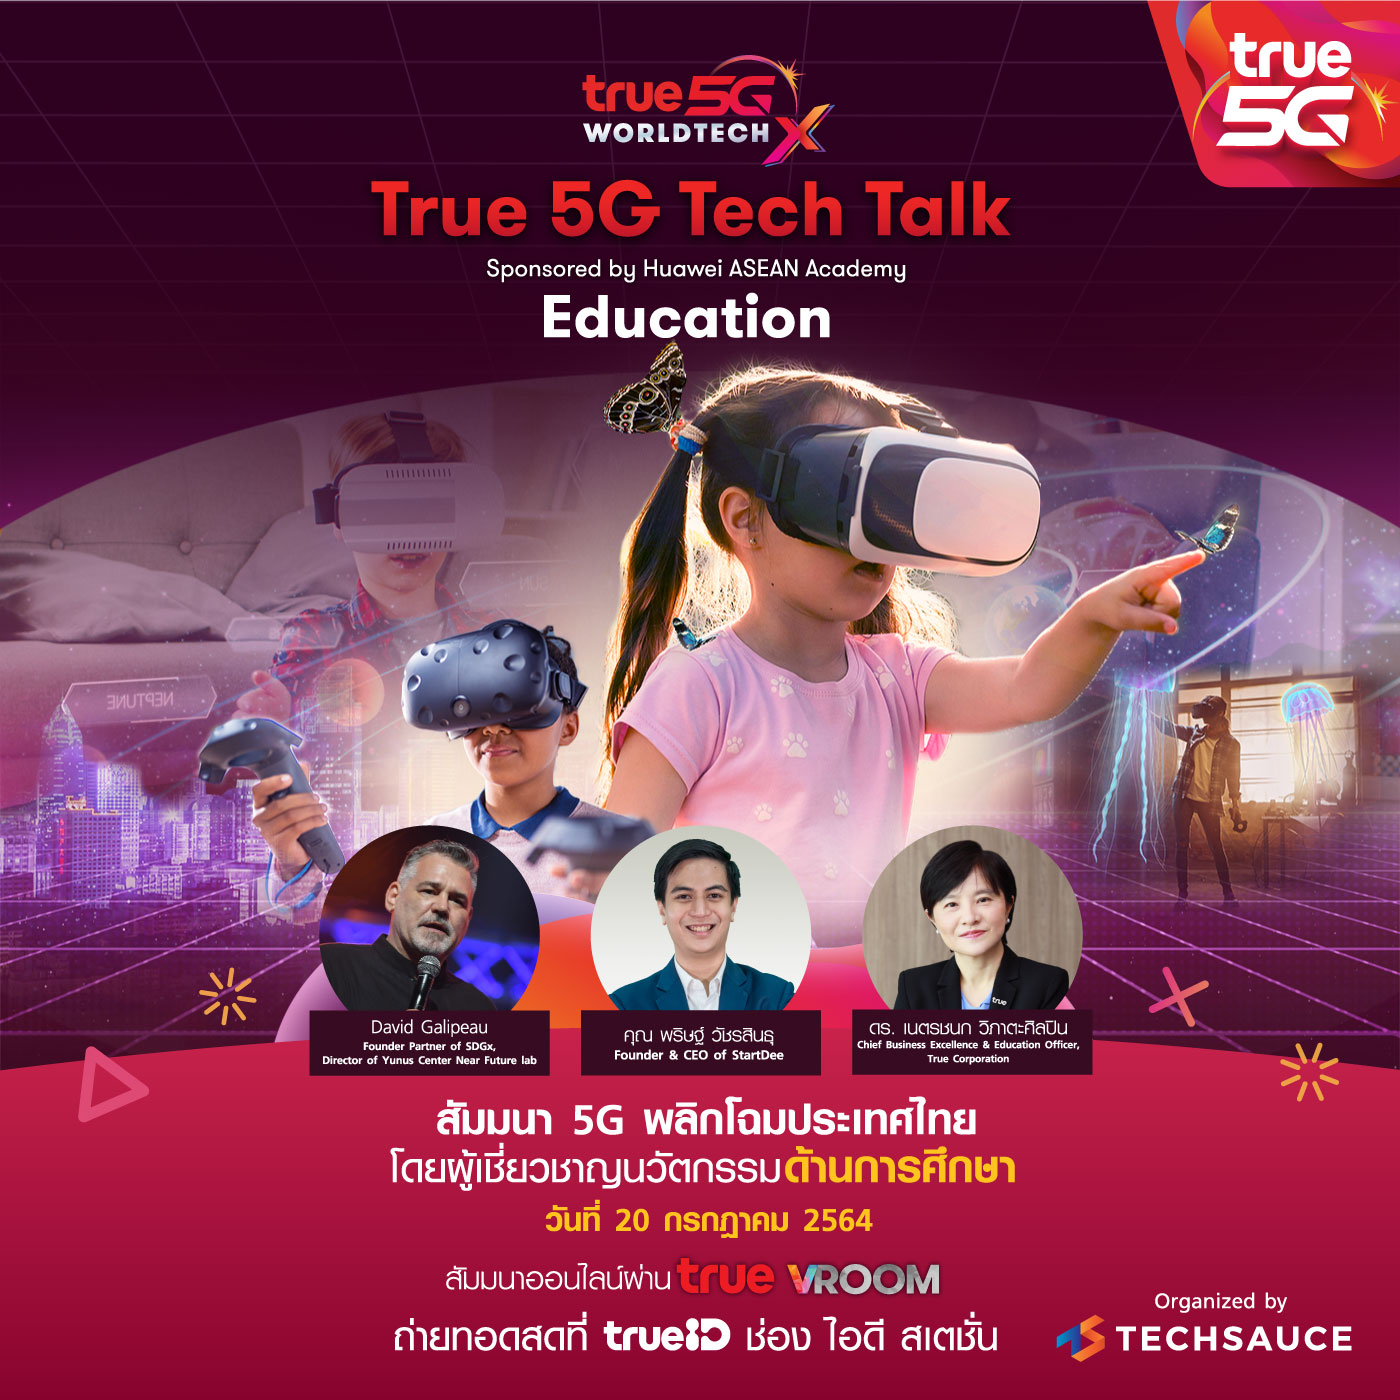 True 5G Tech Talk สัมมนา 5G พลิกโฉมประเทศไทย เปิดมุมมองการใช้ 5G ยกระดับการศึกษาไทย ฟังฟรี 20 ก.ค. นี้ ผ่าน True VROOM